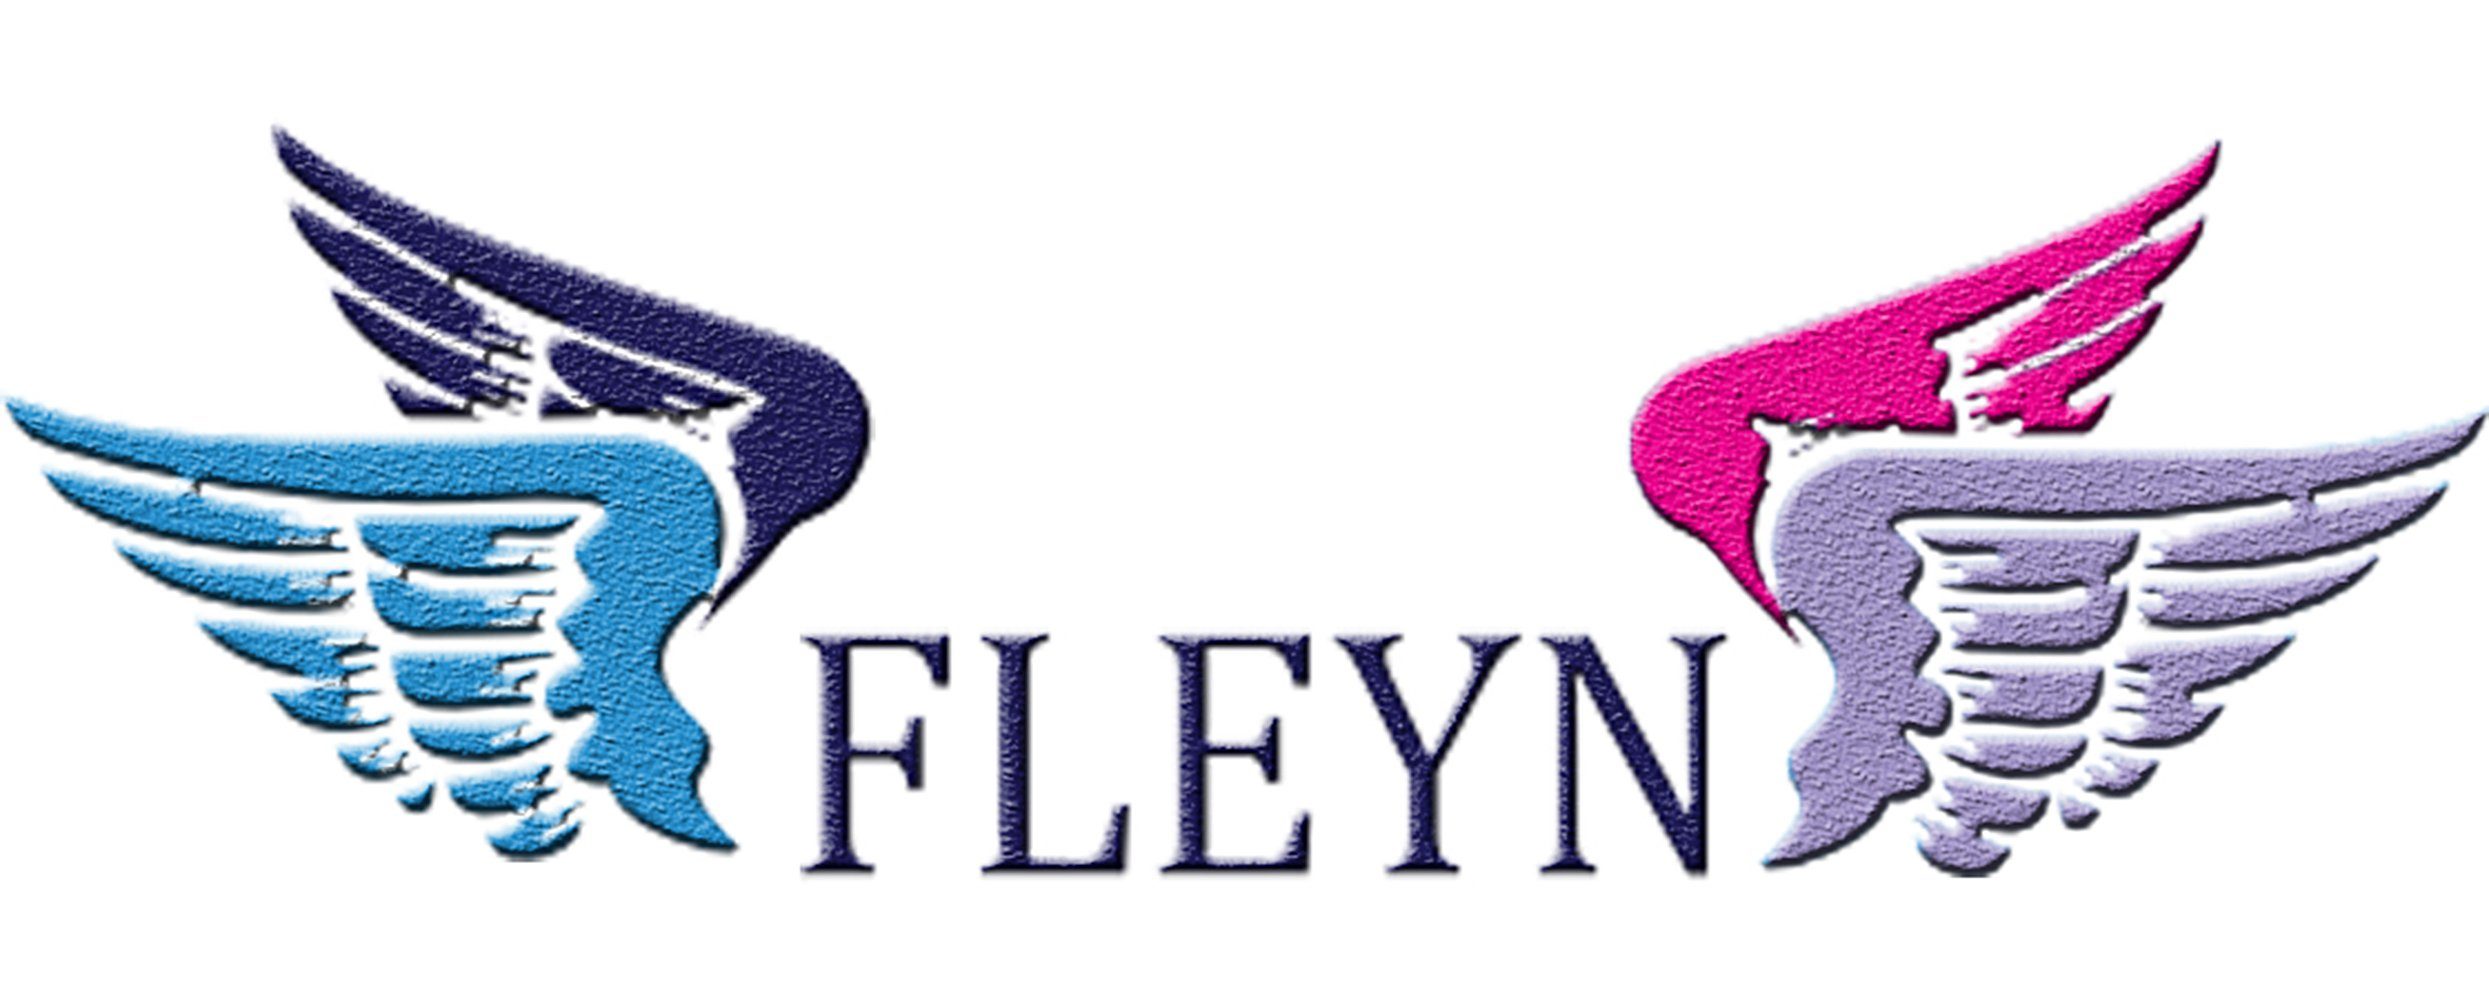 Fleyn